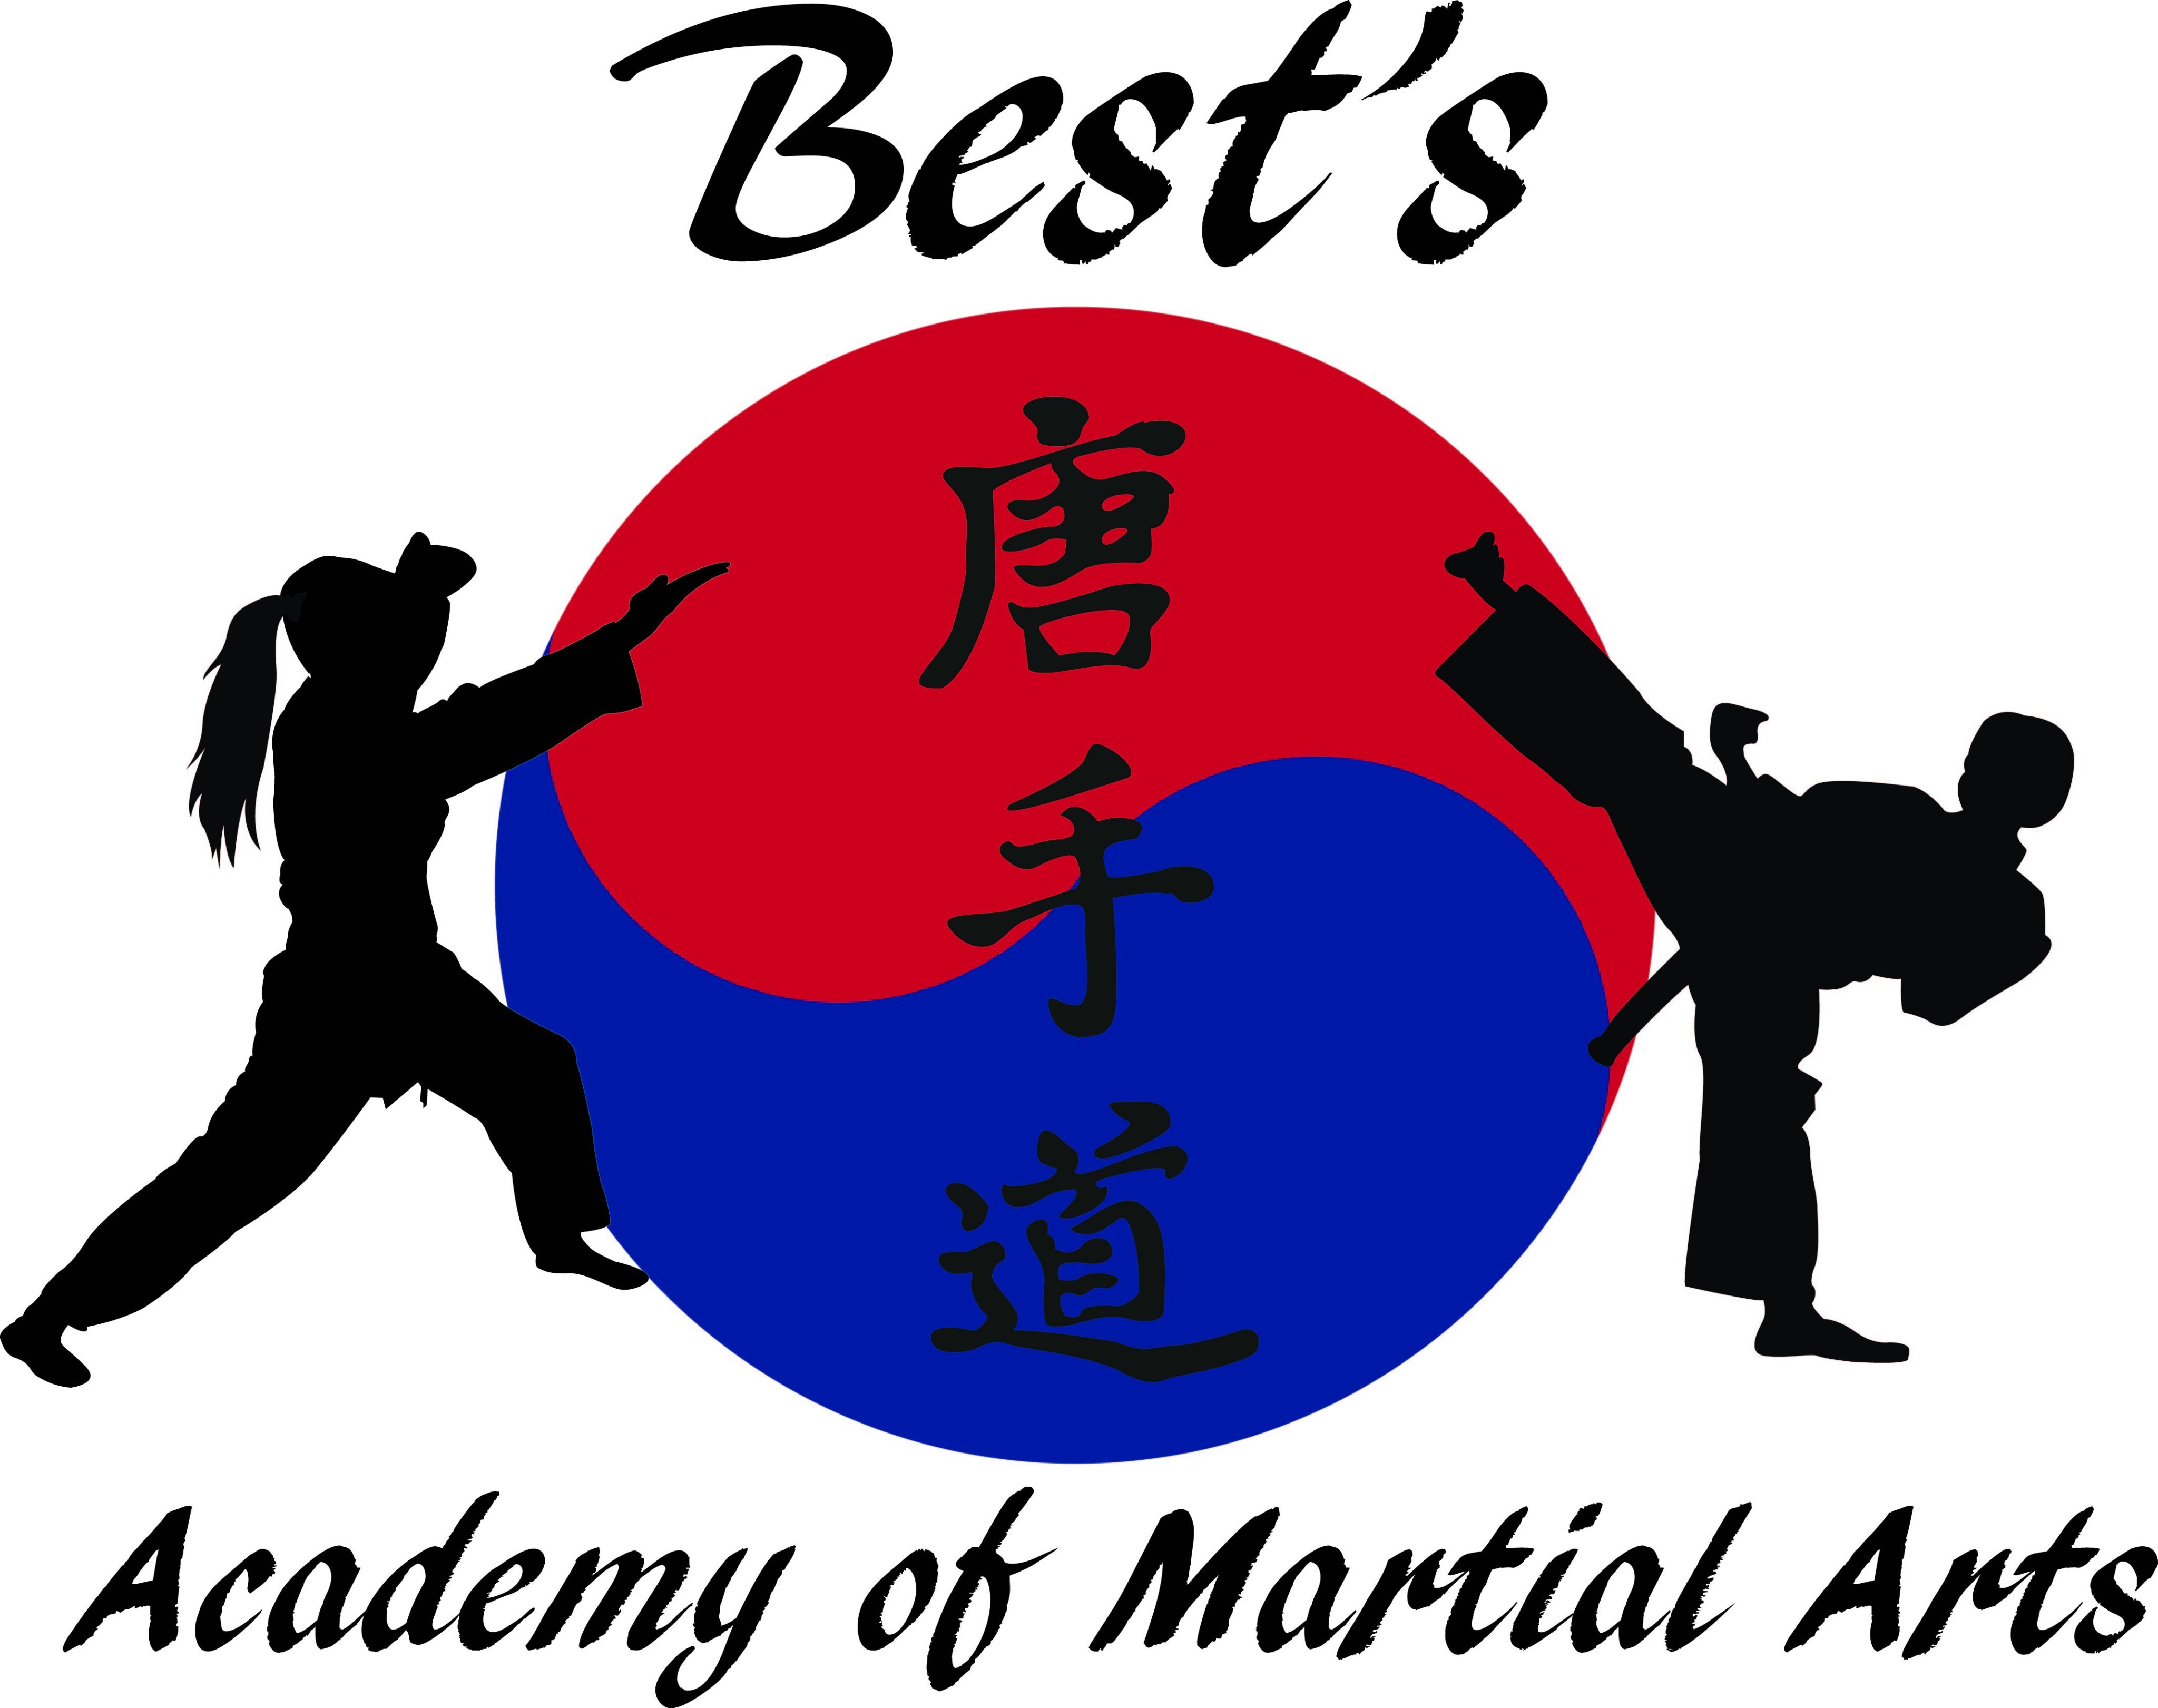 Best's Academy of Martial Arts